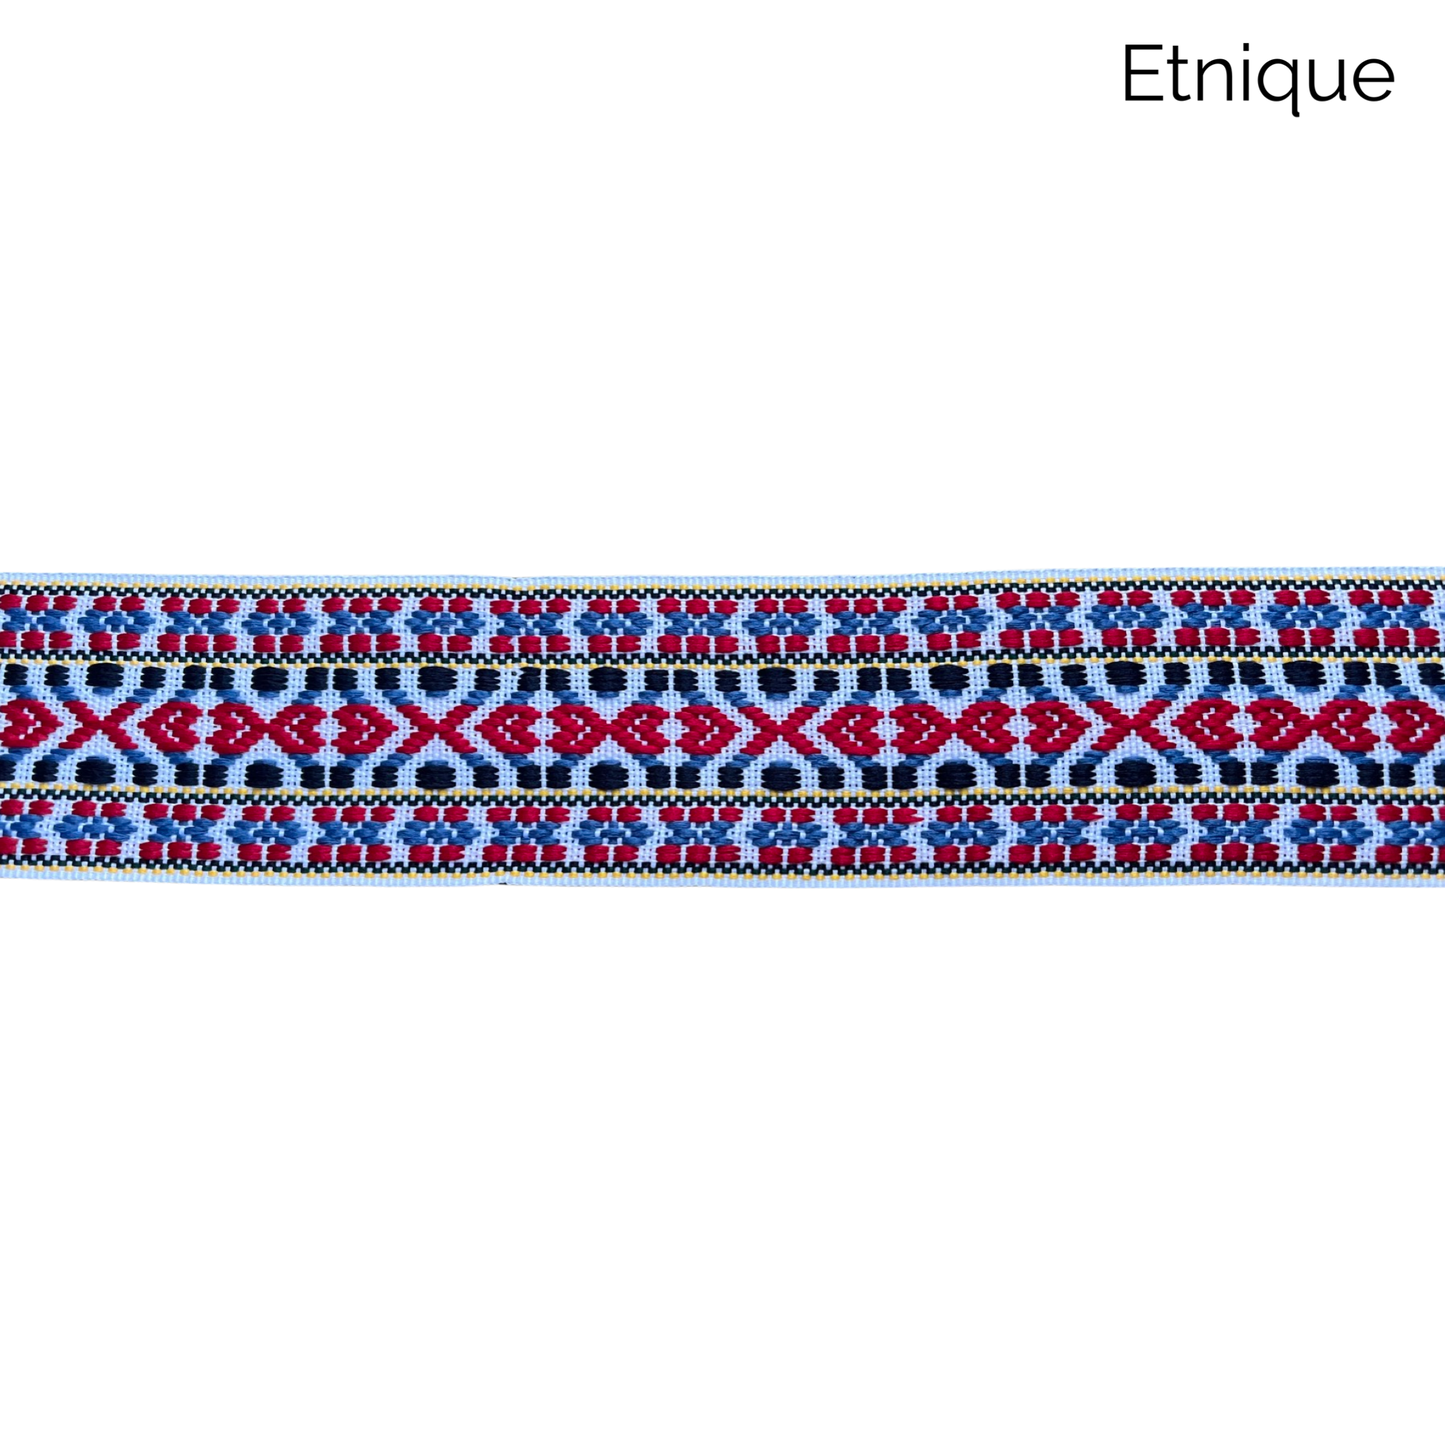 Wide braids - 4-5cm / €10.00